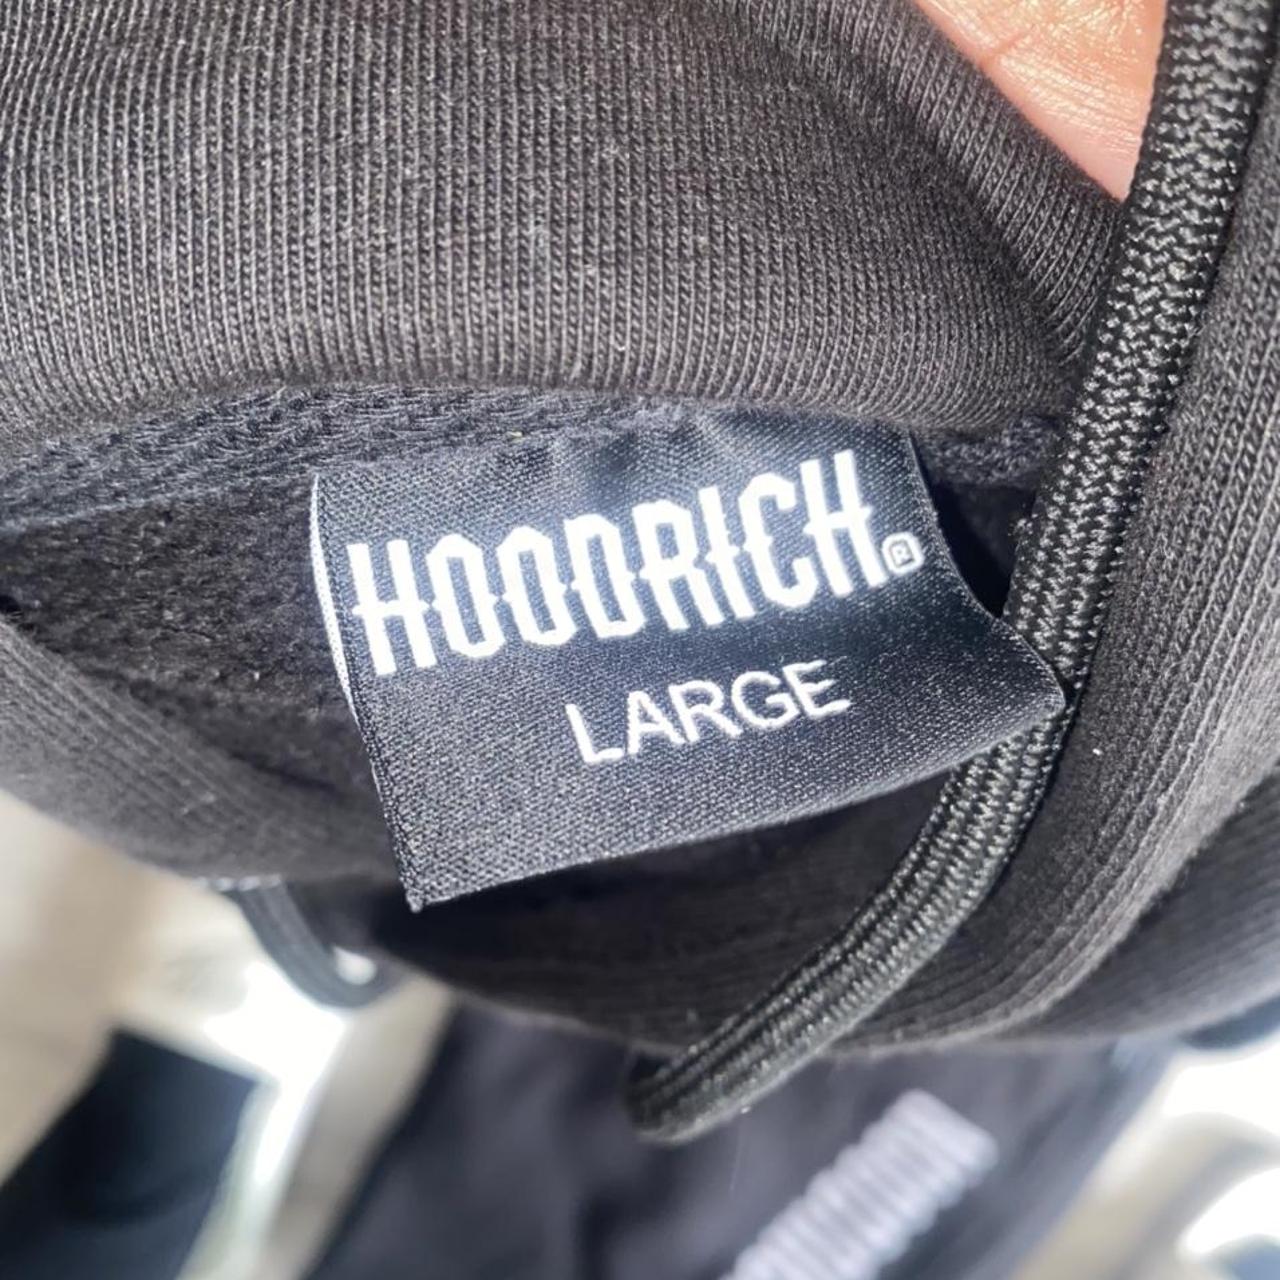 HoodRich tracksuit size l Excellent condition - Depop